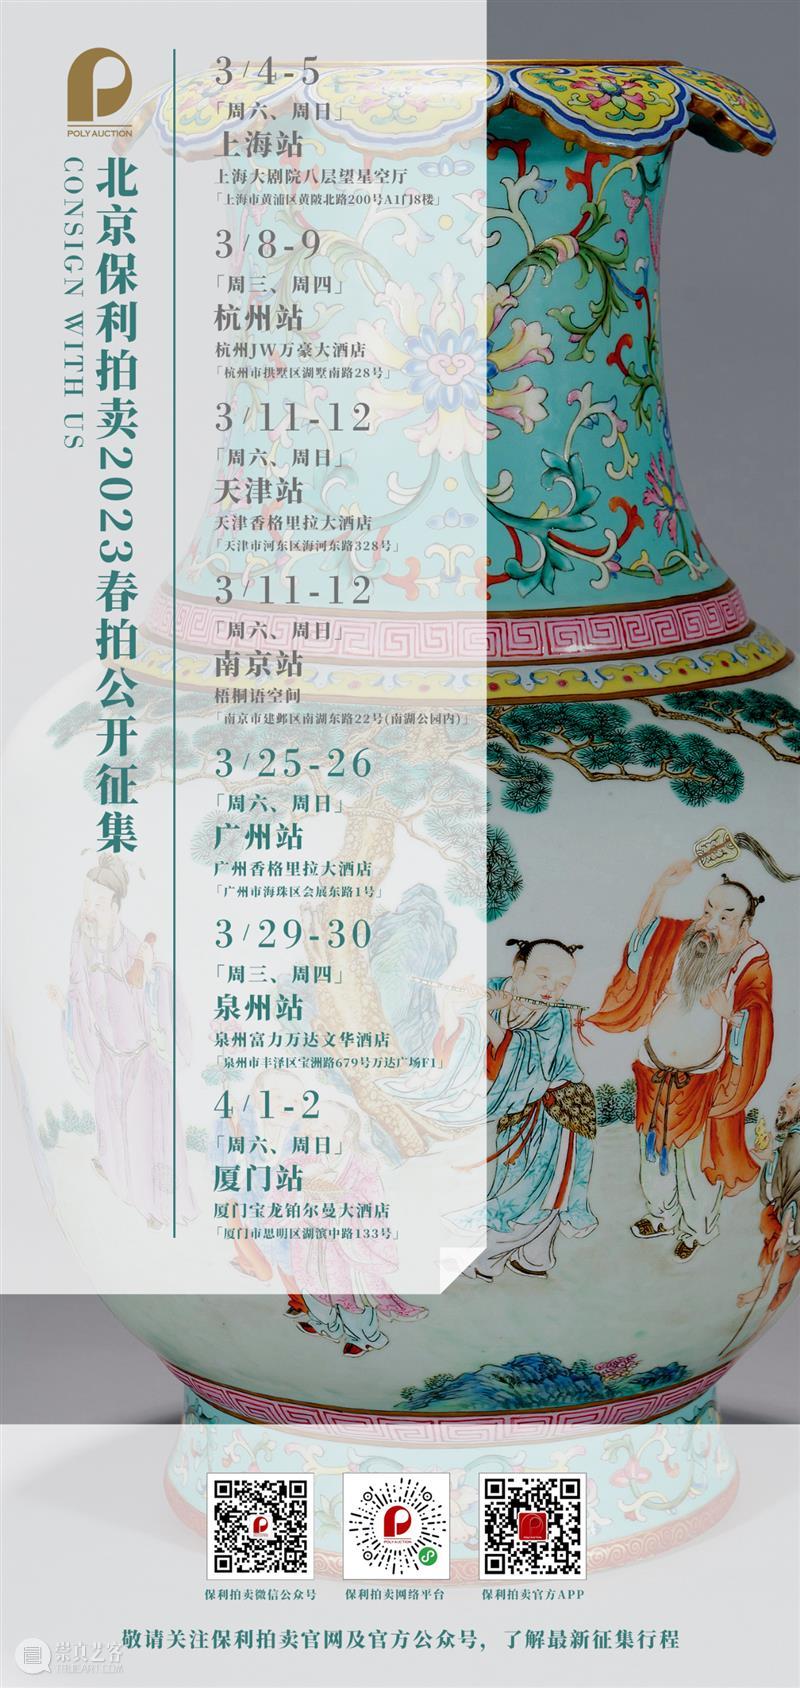 北京保利拍卖丨古代书画部4月线上拍卖会筹备中 崇真艺客